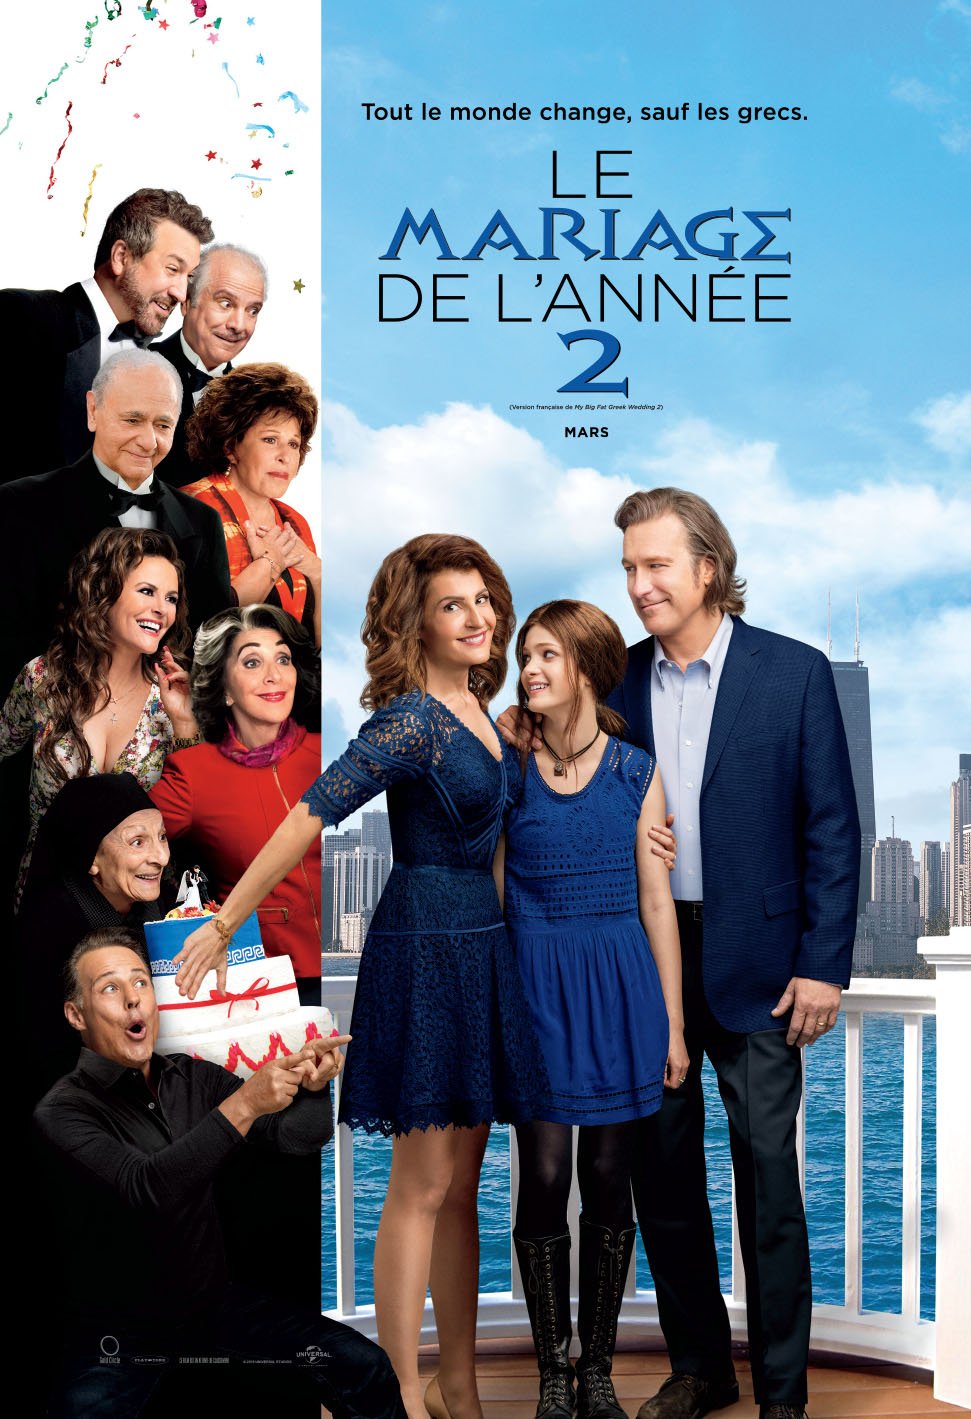 Poster of the movie Le Mariage de l'année 2